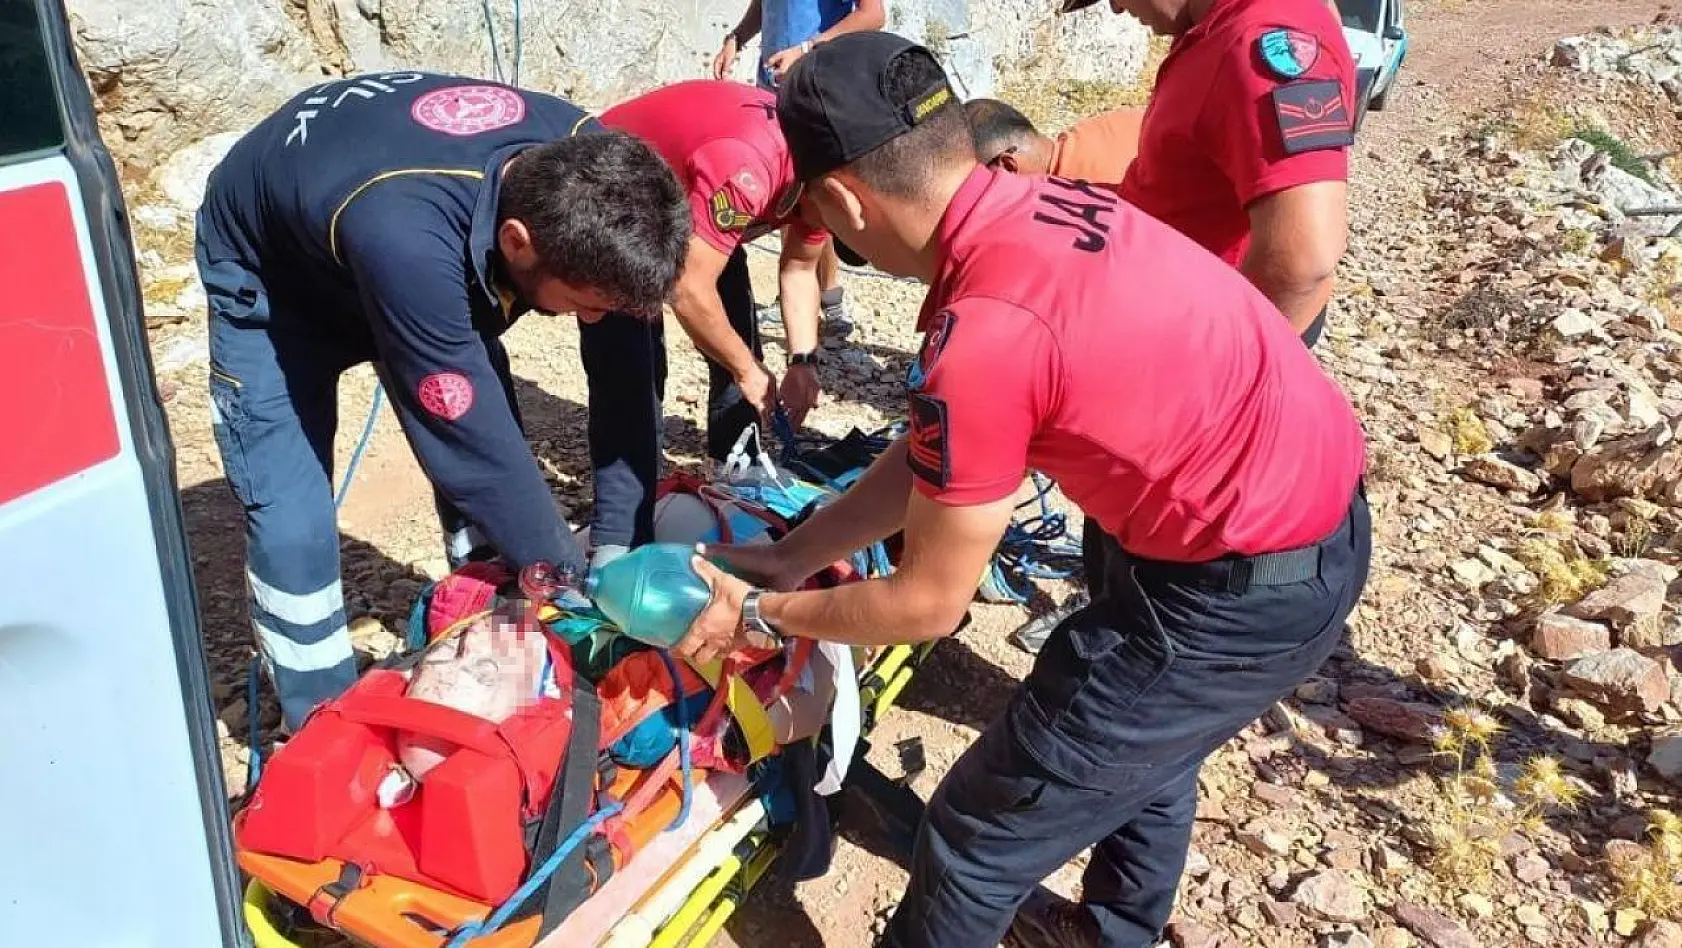 Fethiye'de yamaç paraşütü kazası: 1 ölü